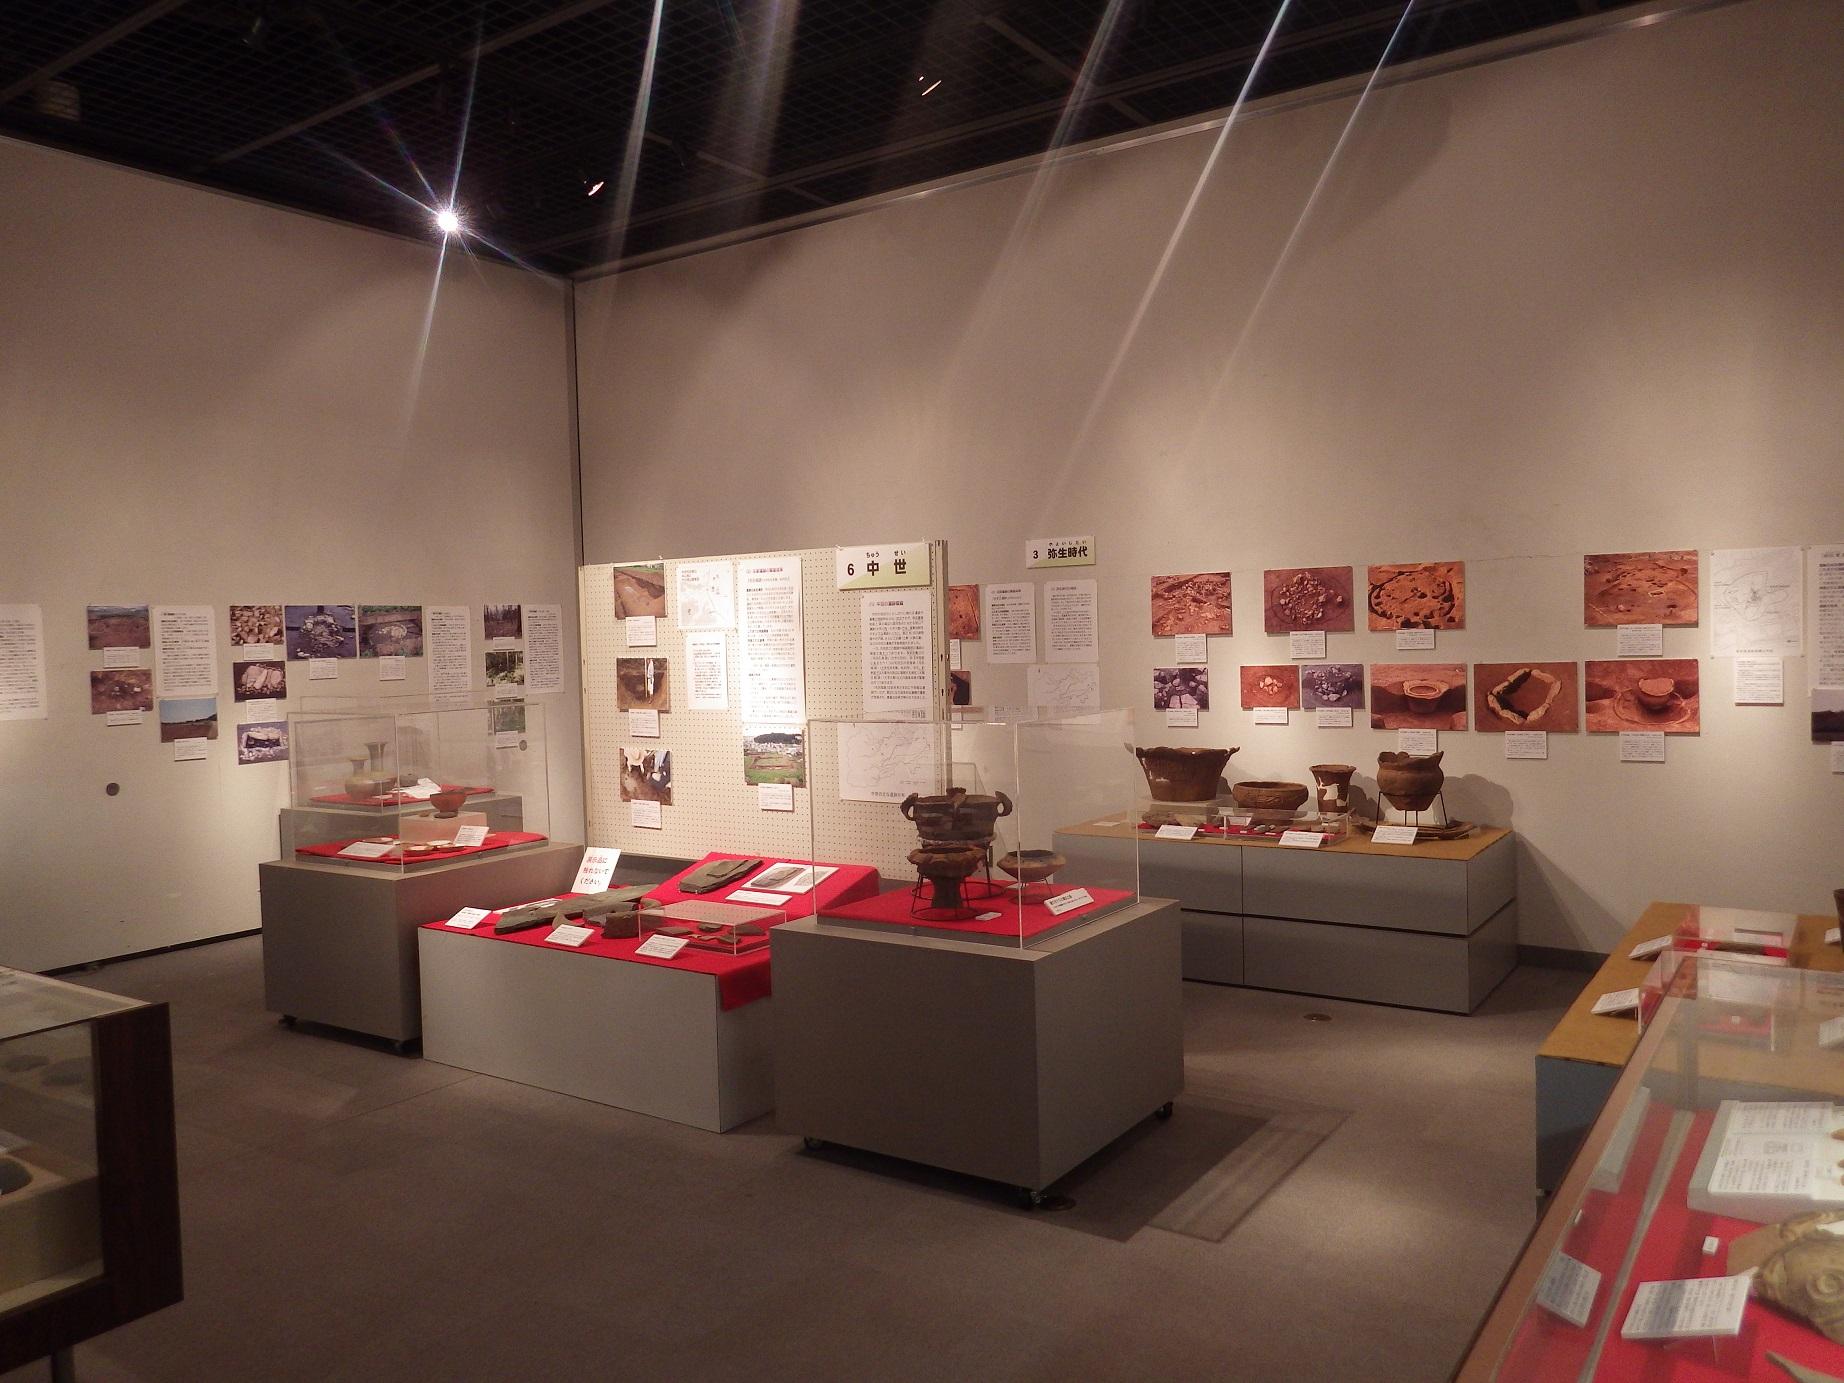 土器の実物や出土した状態の写真が飾られている令和元年度後期企画展の資料が展示された特別展示室の写真